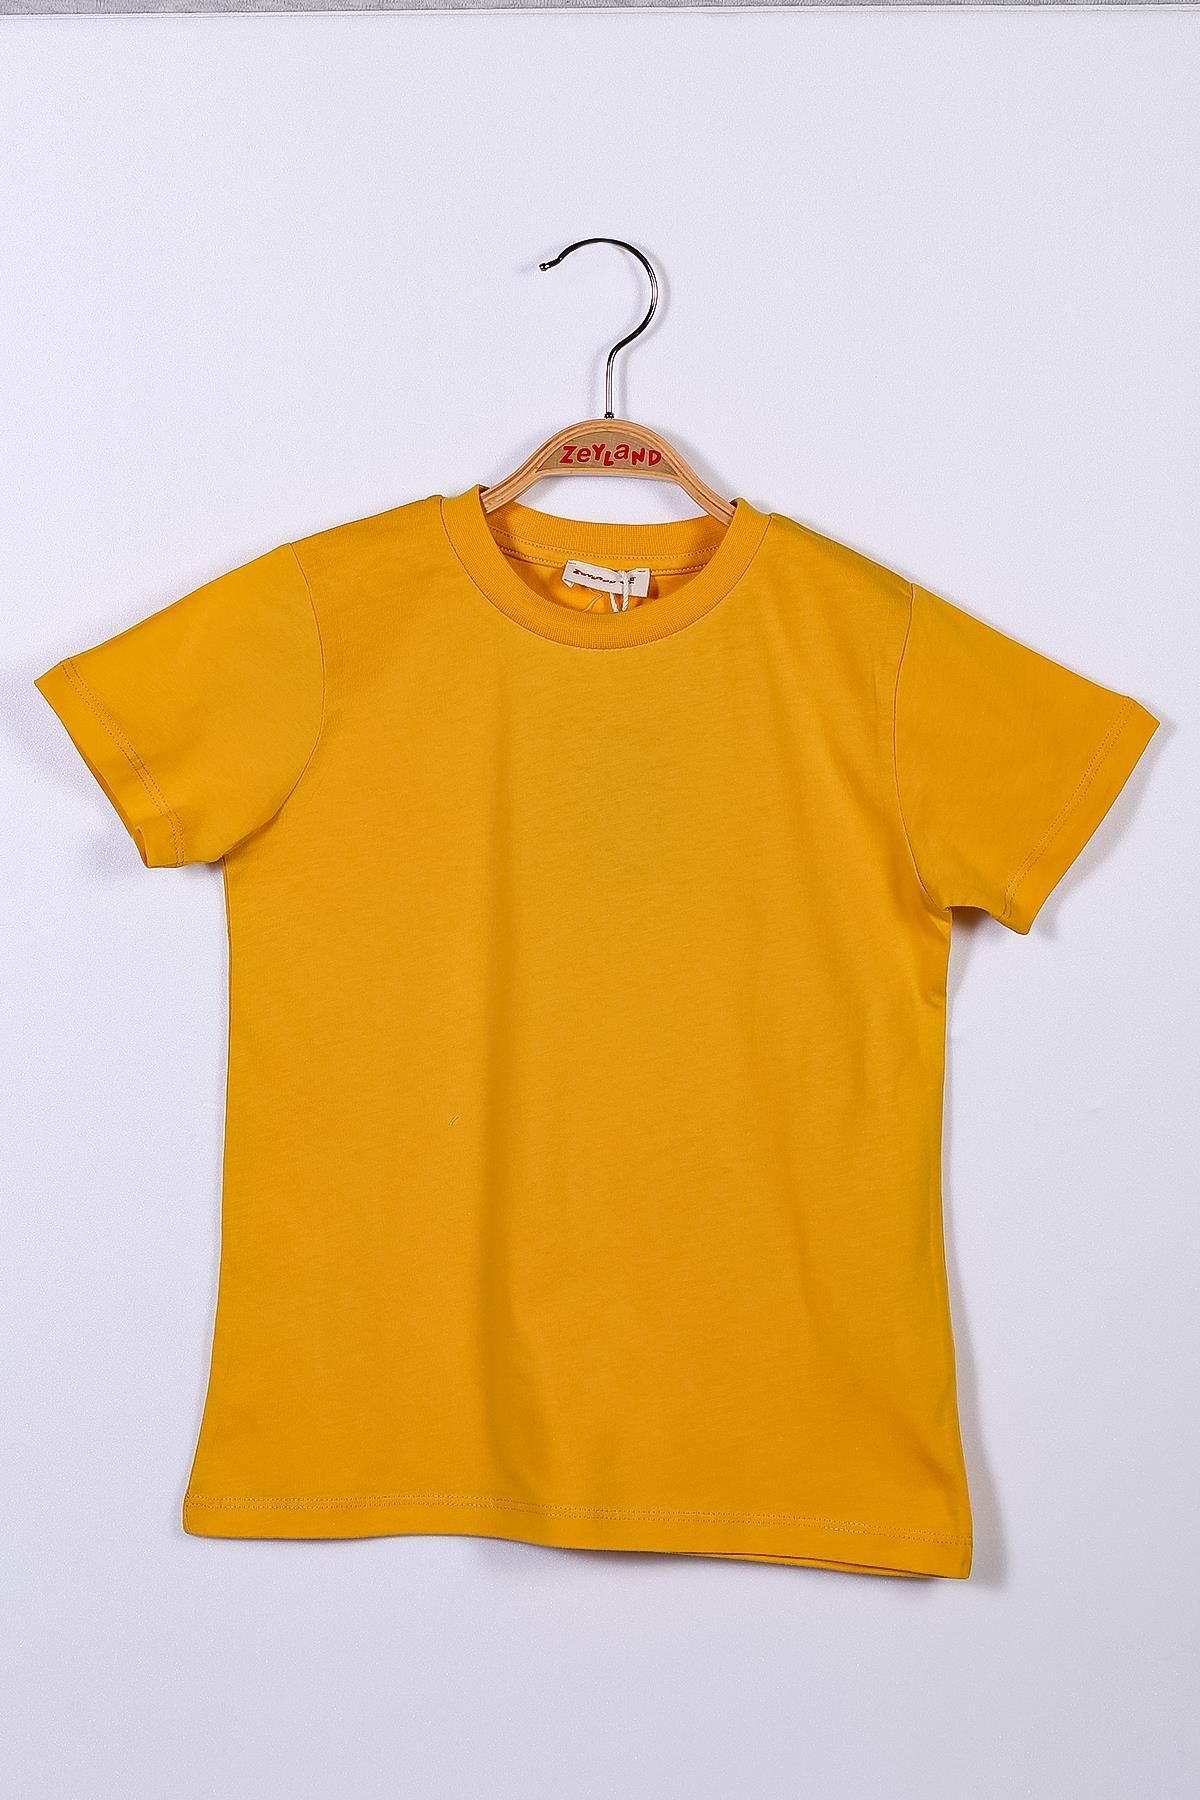 Zeyland Sarı Unisex Bebek Basic T-shirt (9ay-4yaş)